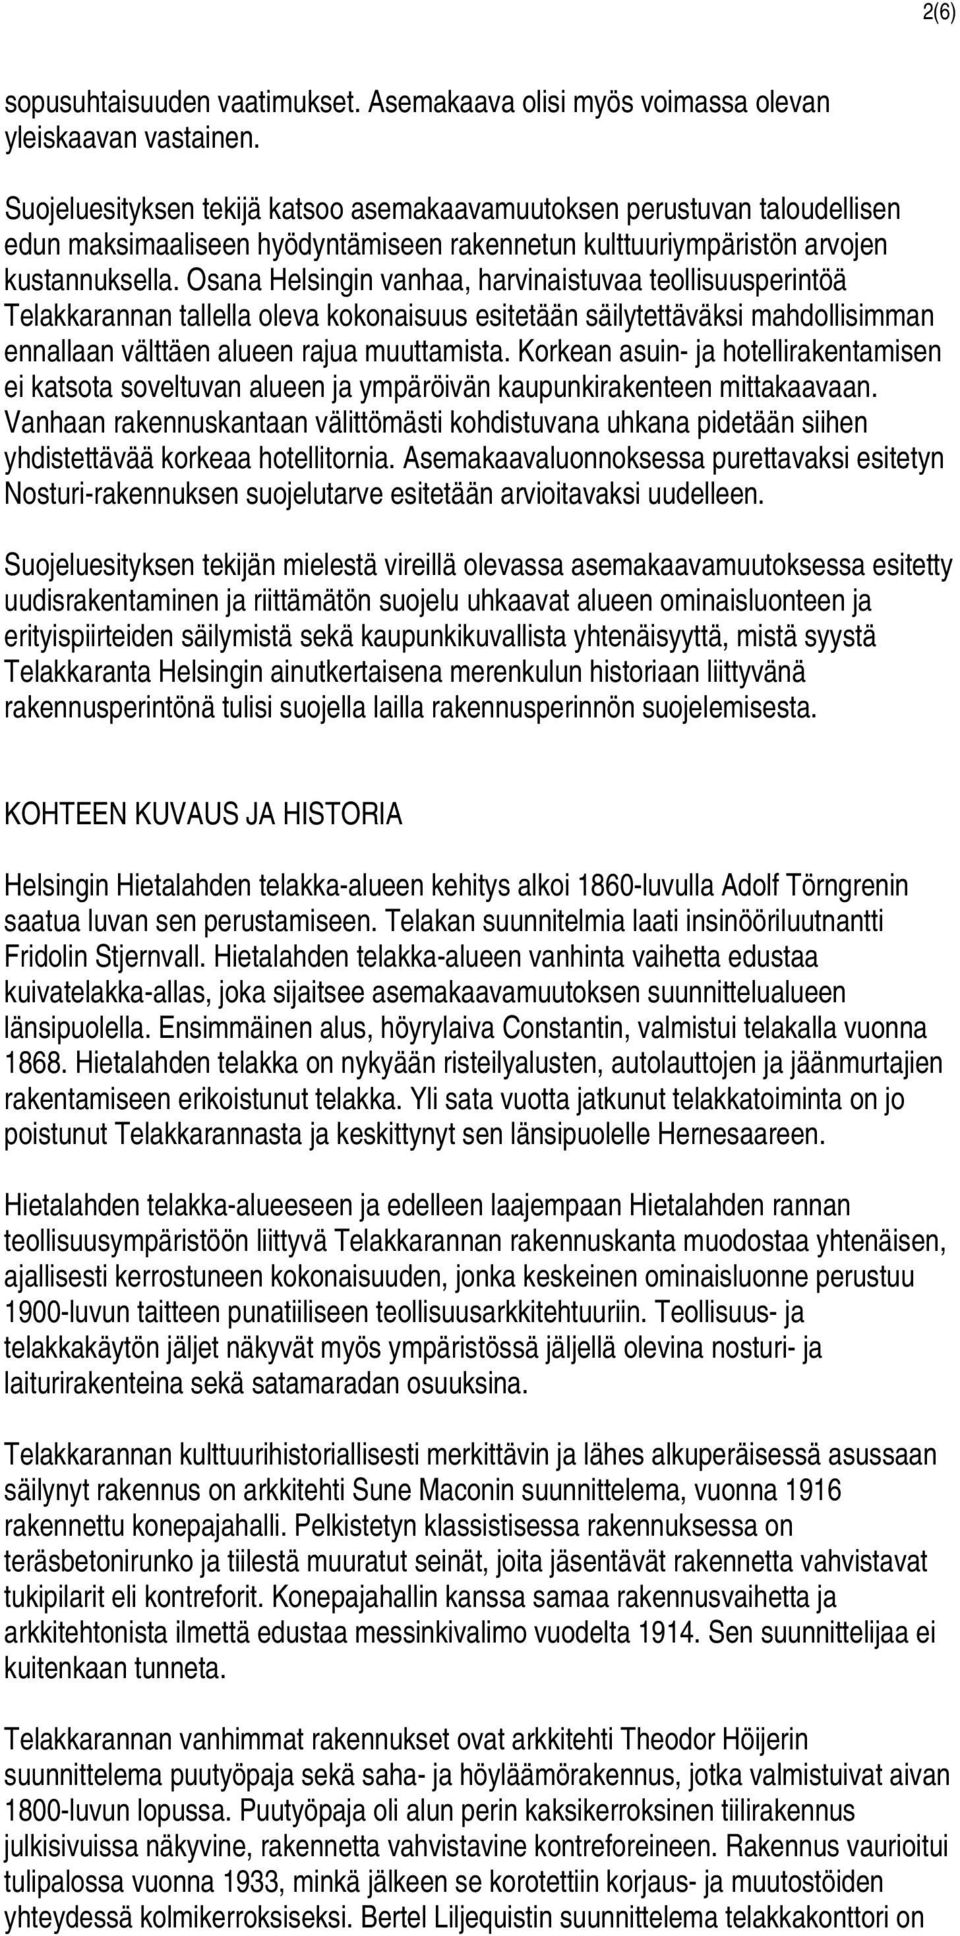 Osana Helsingin vanhaa, harvinaistuvaa teollisuusperintöä Telakkarannan tallella oleva kokonaisuus esitetään säilytettäväksi mahdollisimman ennallaan välttäen alueen rajua muuttamista.